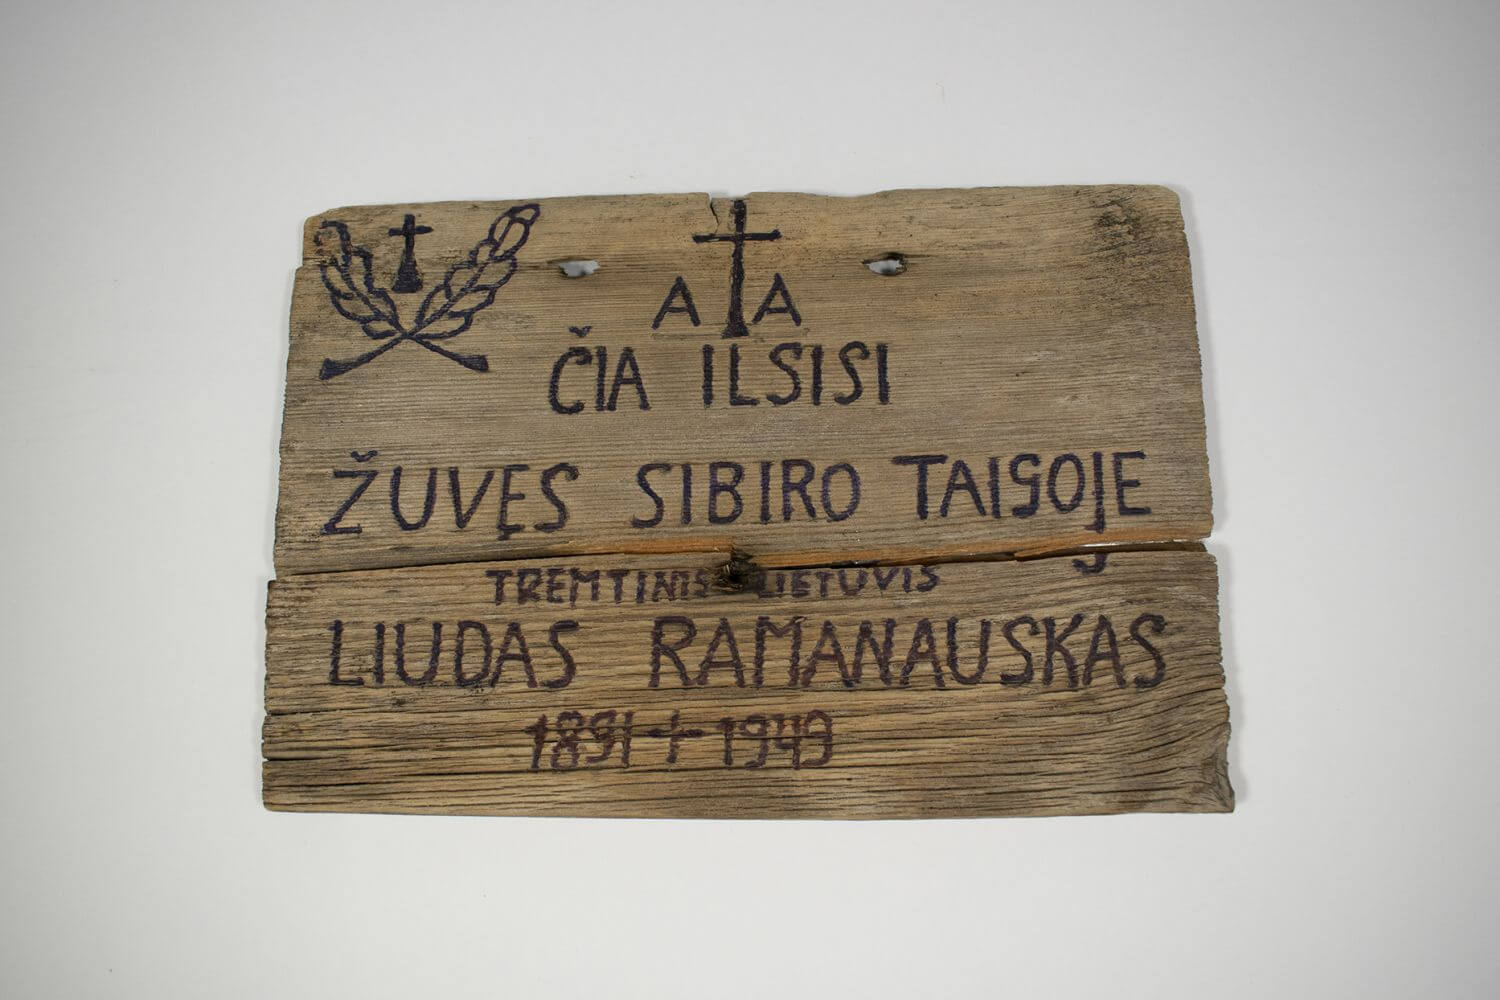 Antkapinė lentelė nuo 1949 m. tremtyje mirusio Liudo Ramanausko kapo.